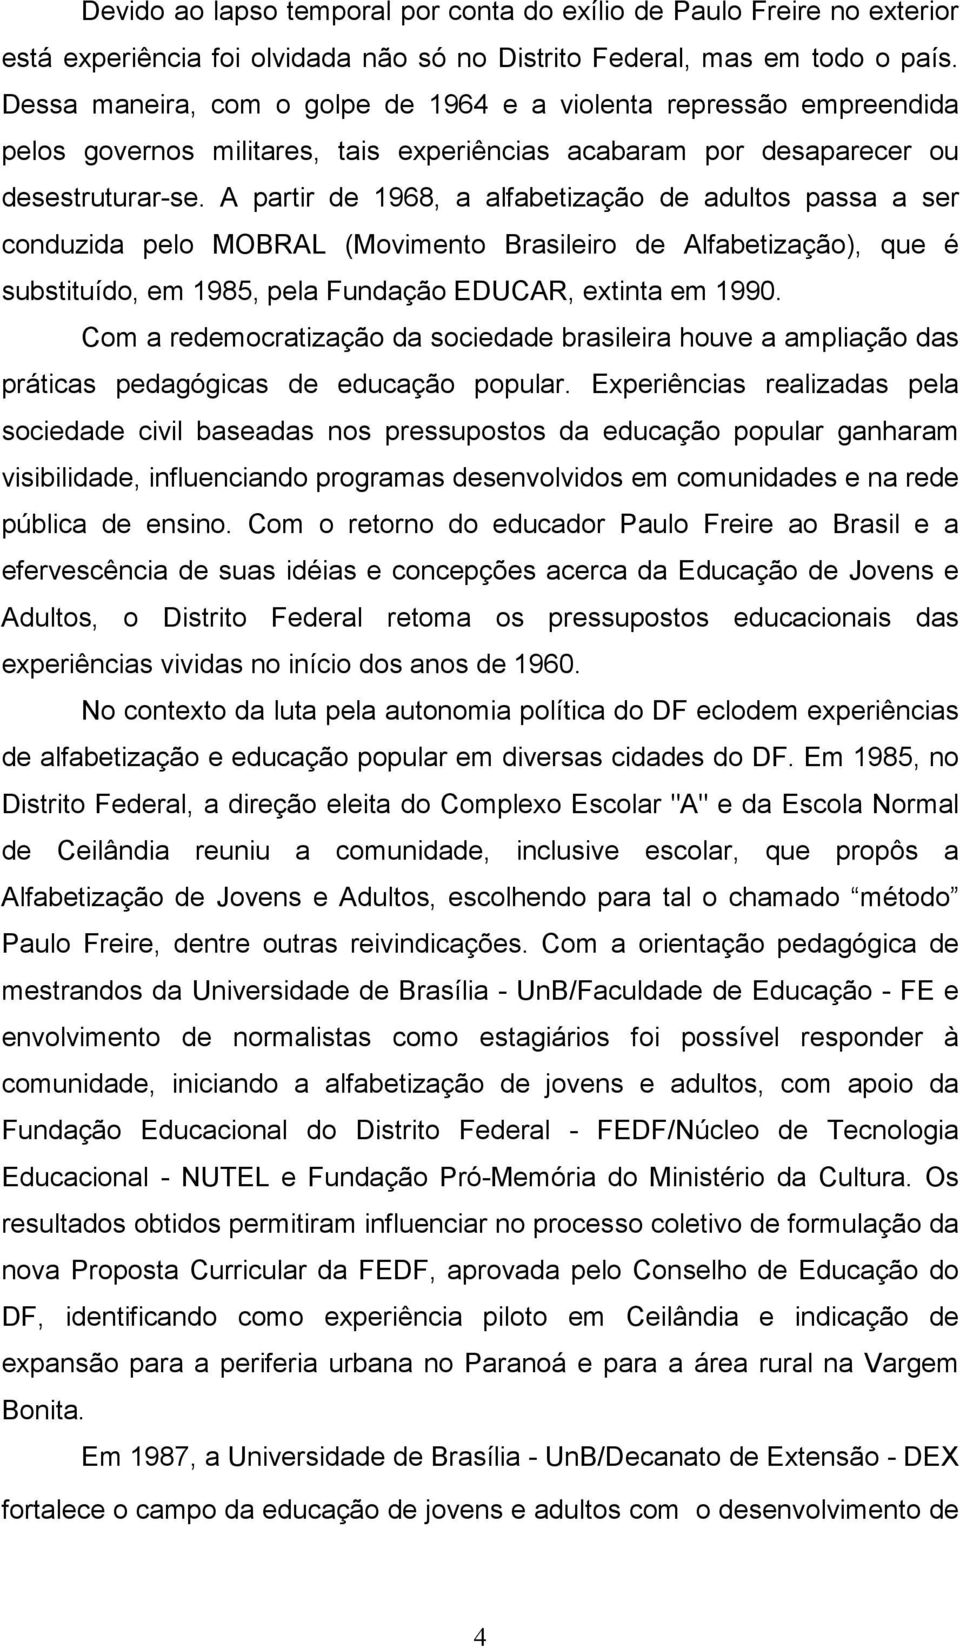 A partir de 1968, a alfabetização de adultos passa a ser conduzida pelo MOBRAL (Movimento Brasileiro de Alfabetização), que é substituído, em 1985, pela Fundação EDUCAR, extinta em 1990.